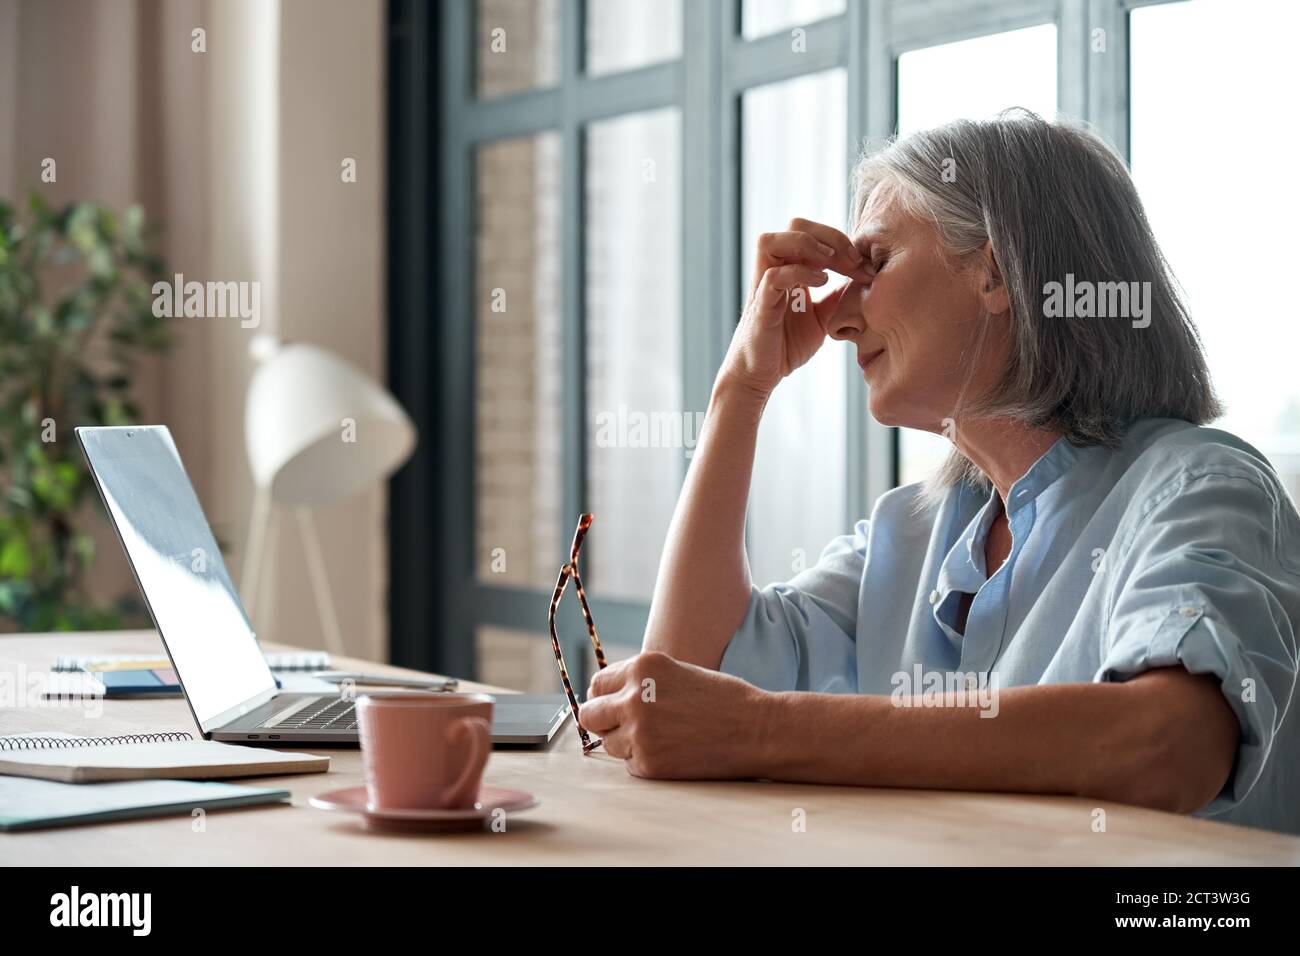 La vecchia donna di affari stanca toglie gli occhiali ritenendo lo sforzo dell'occhio dal calcolatore. Foto Stock